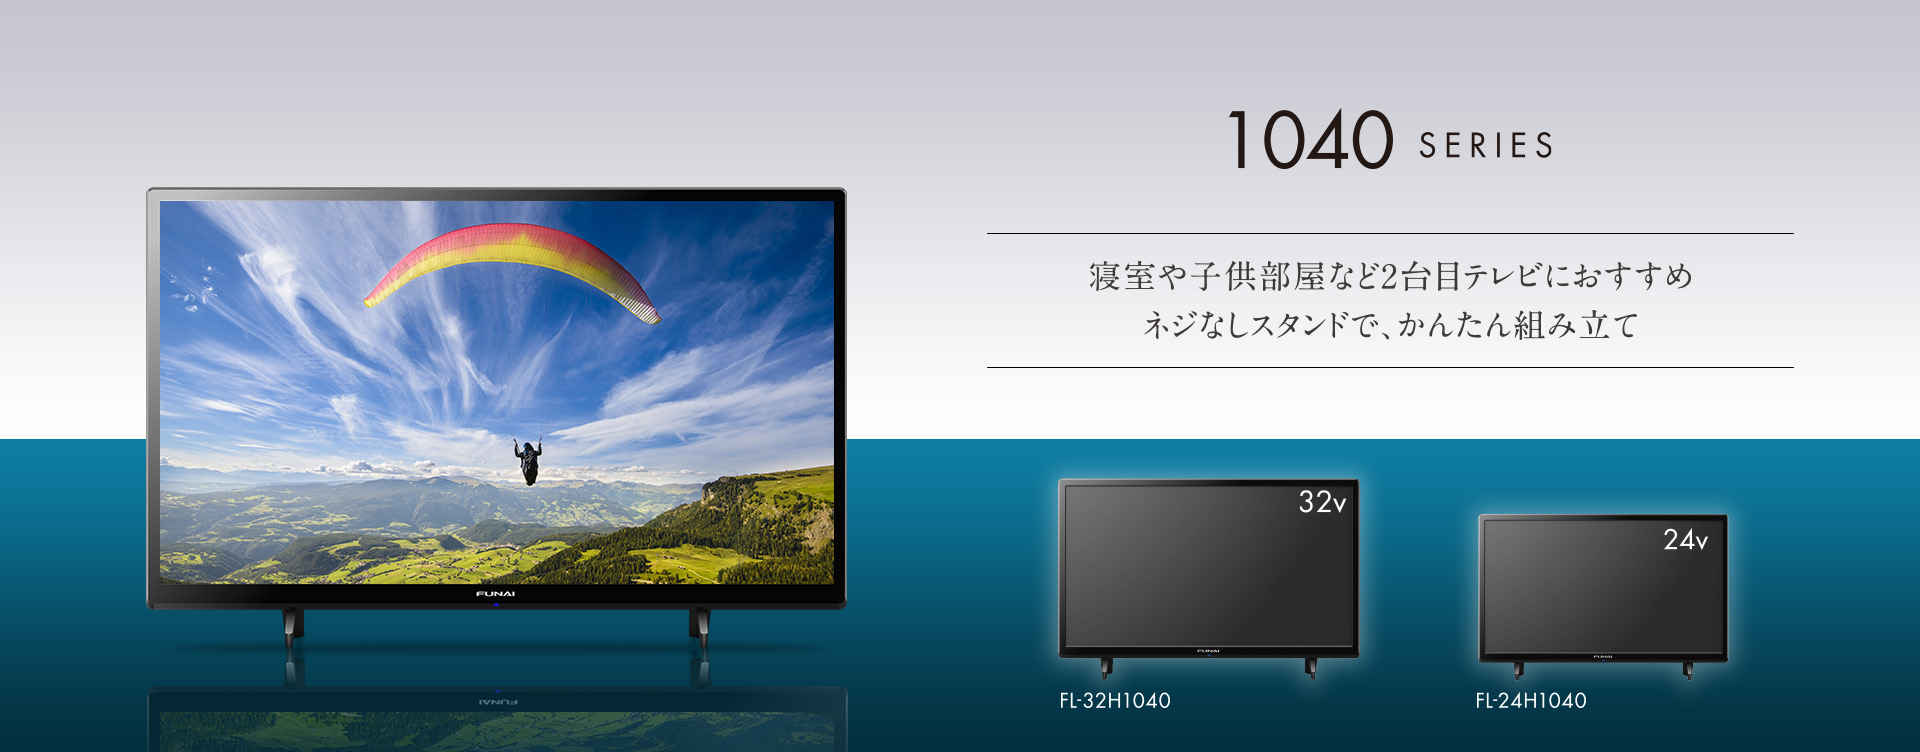 フナイ 24V型 液晶テレビ ハイビジョン ダブルチューナー 500GB HDD内蔵(裏番組録画対応) FL-24H2010 地上・BS・1 通販 